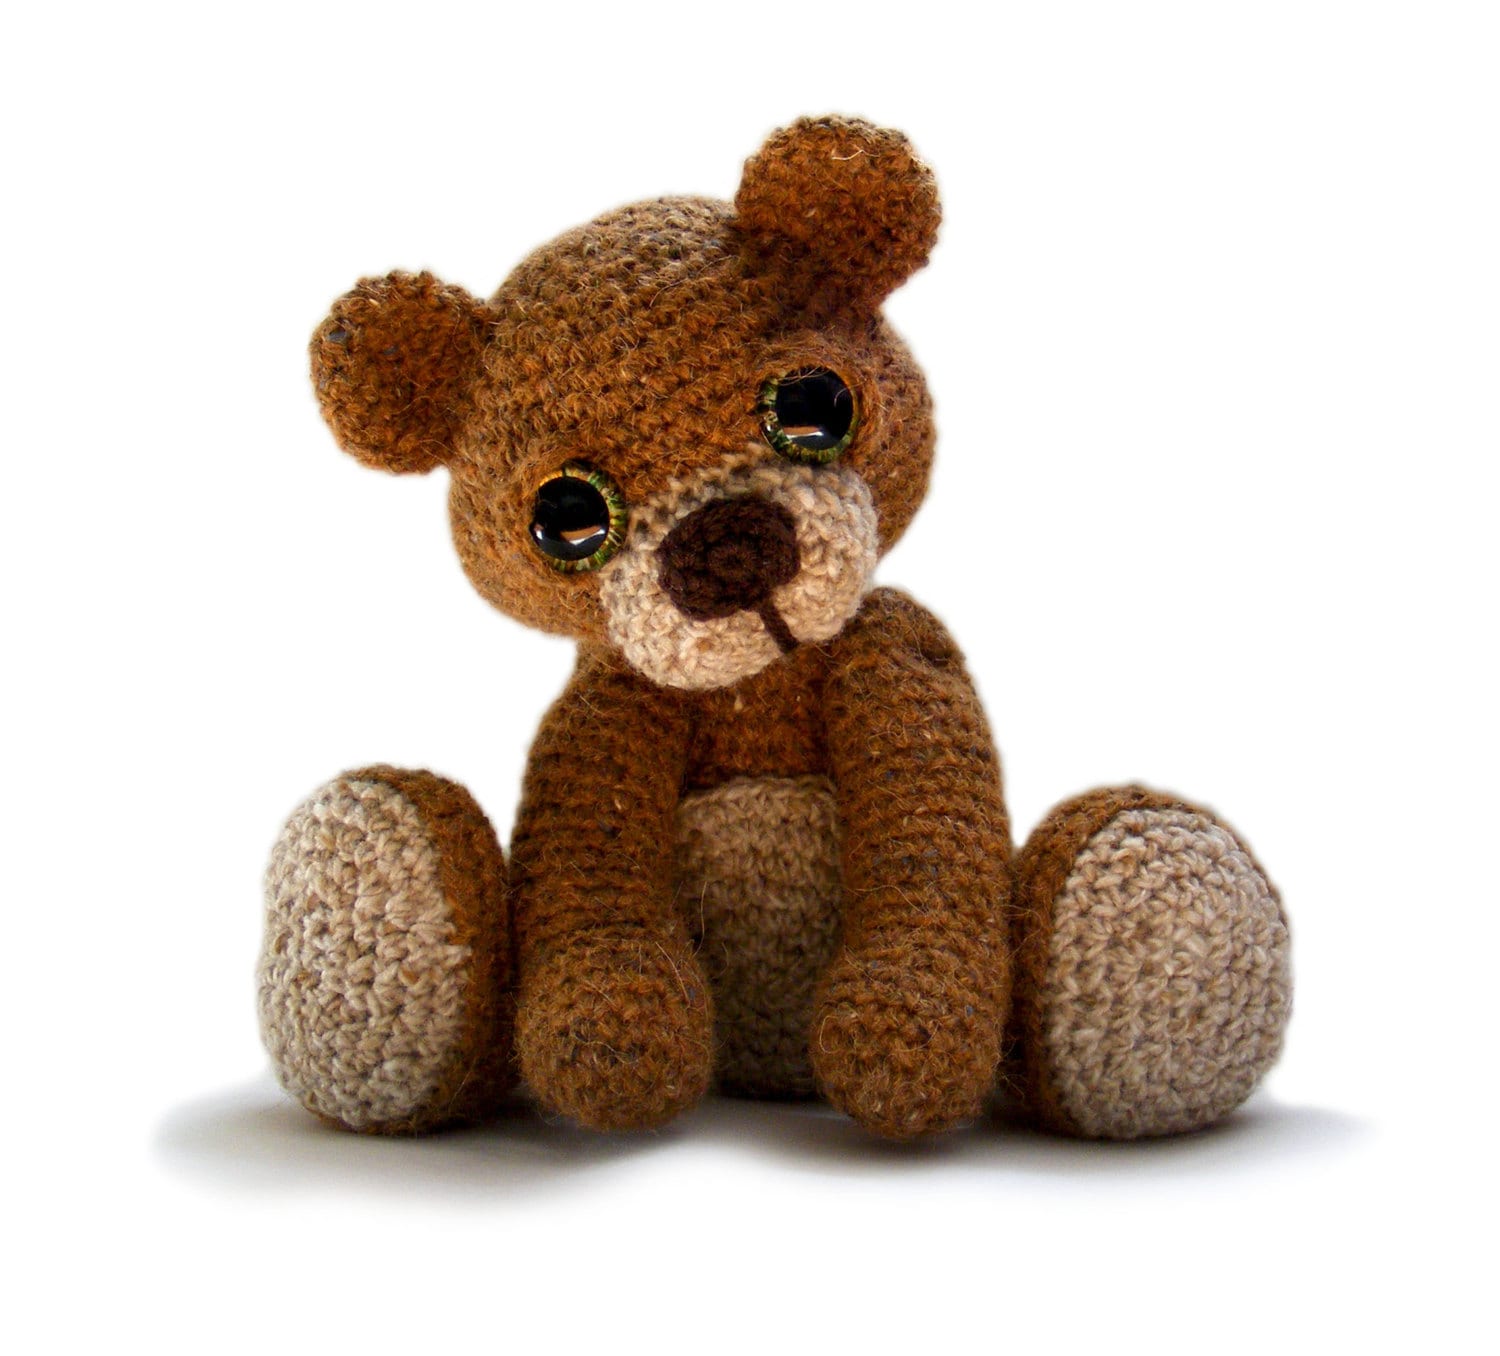 free downloadable teddy bear patterns pdf